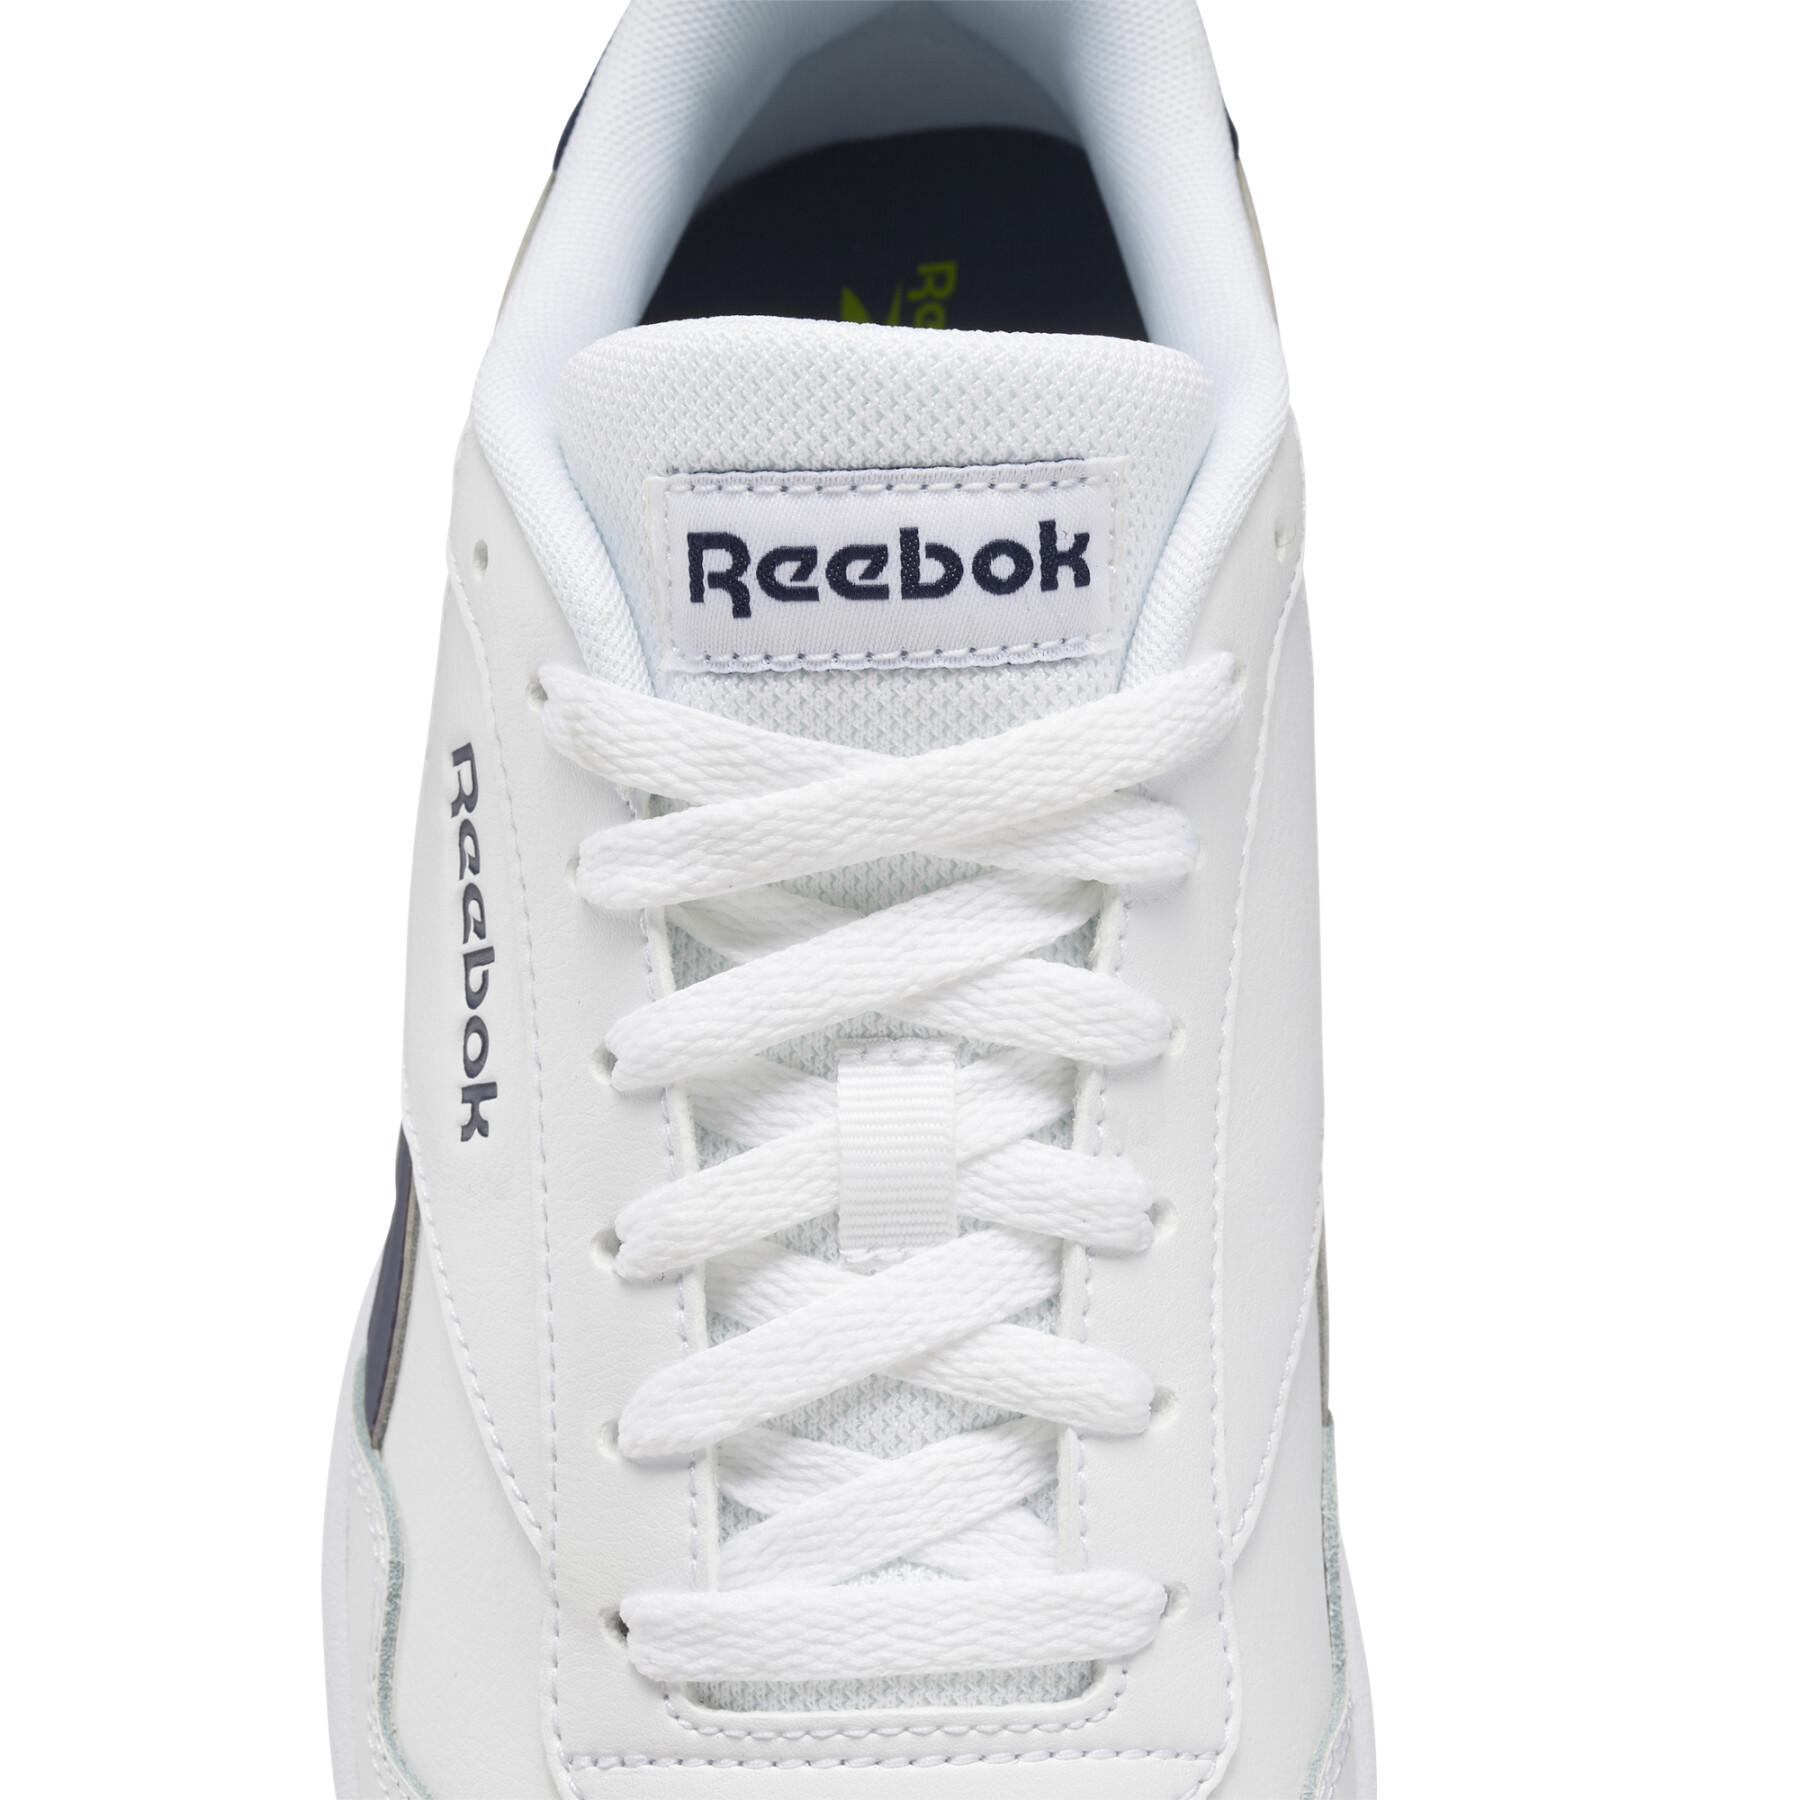 Schoenen Reebok Royal Techque